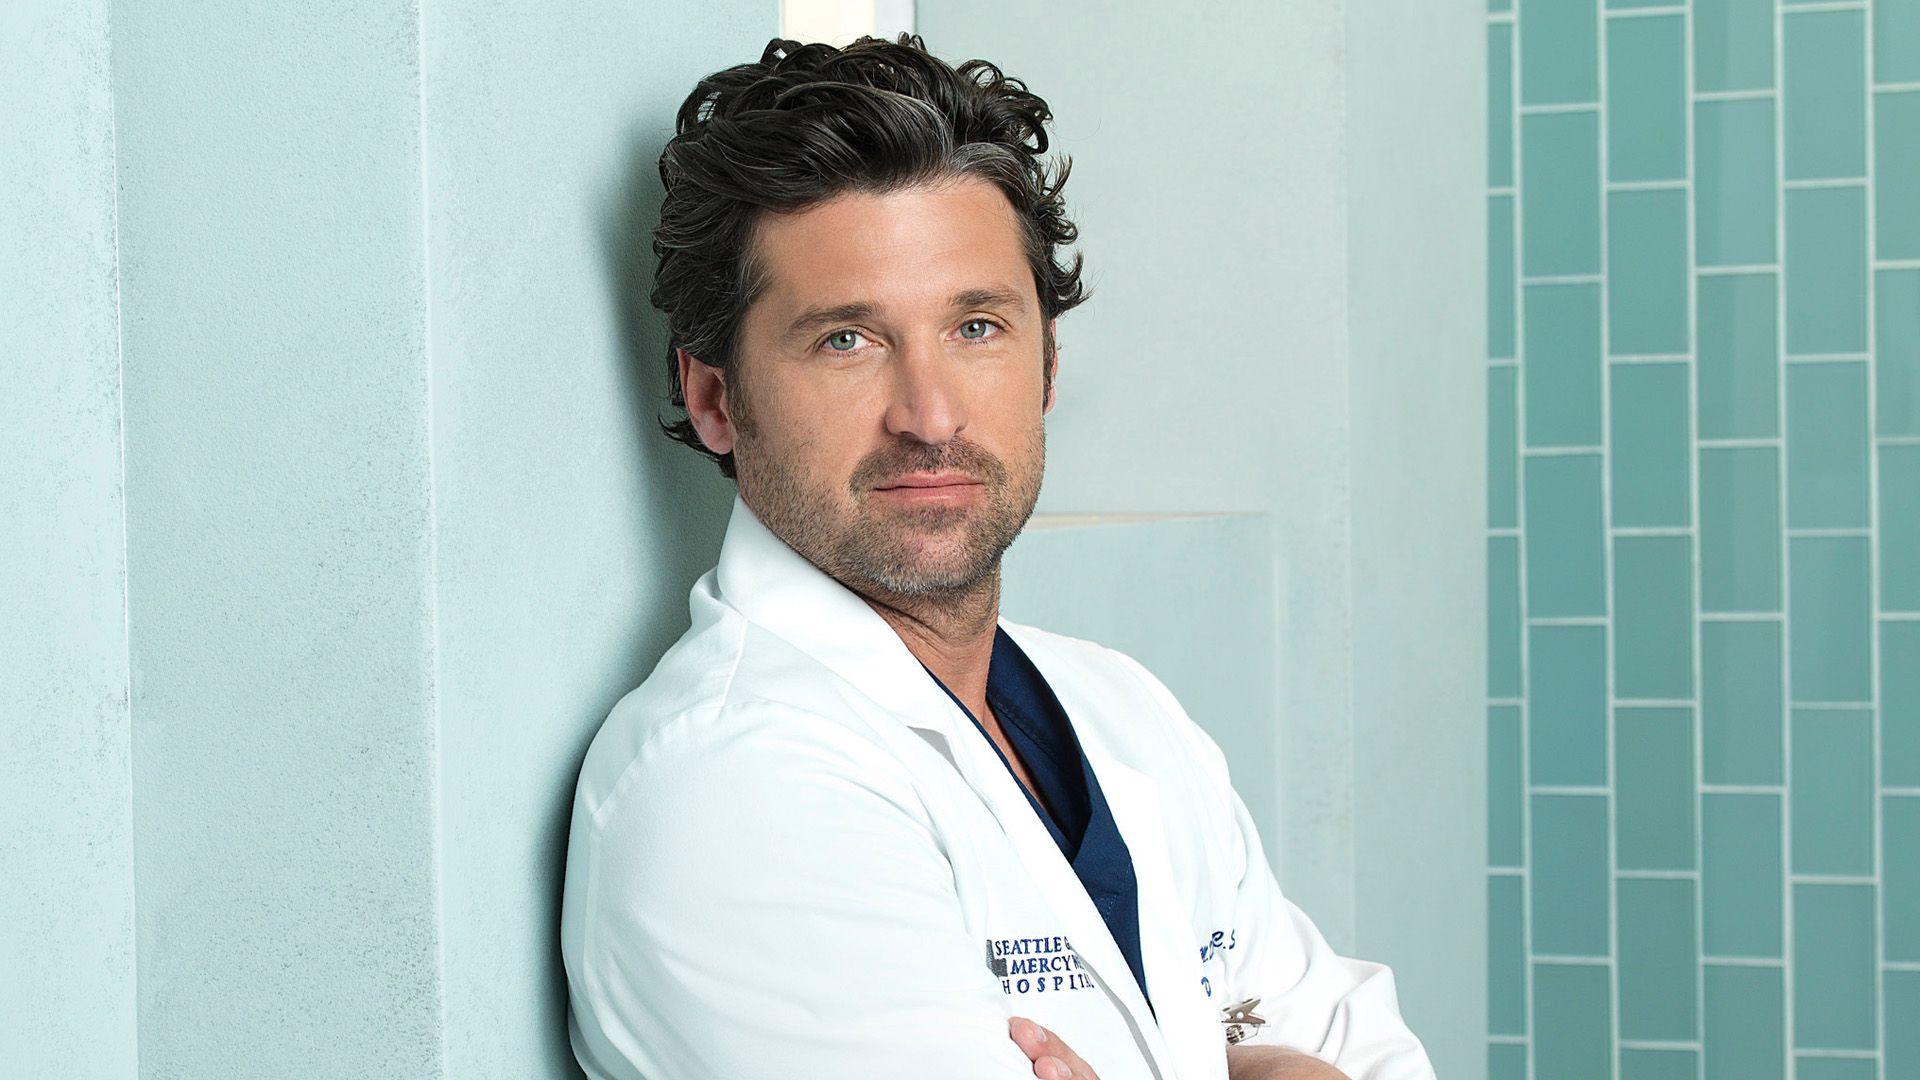 Patrick Dempsey Leaving 'Grey's Anatomy': Derek Dies On ABC Medical